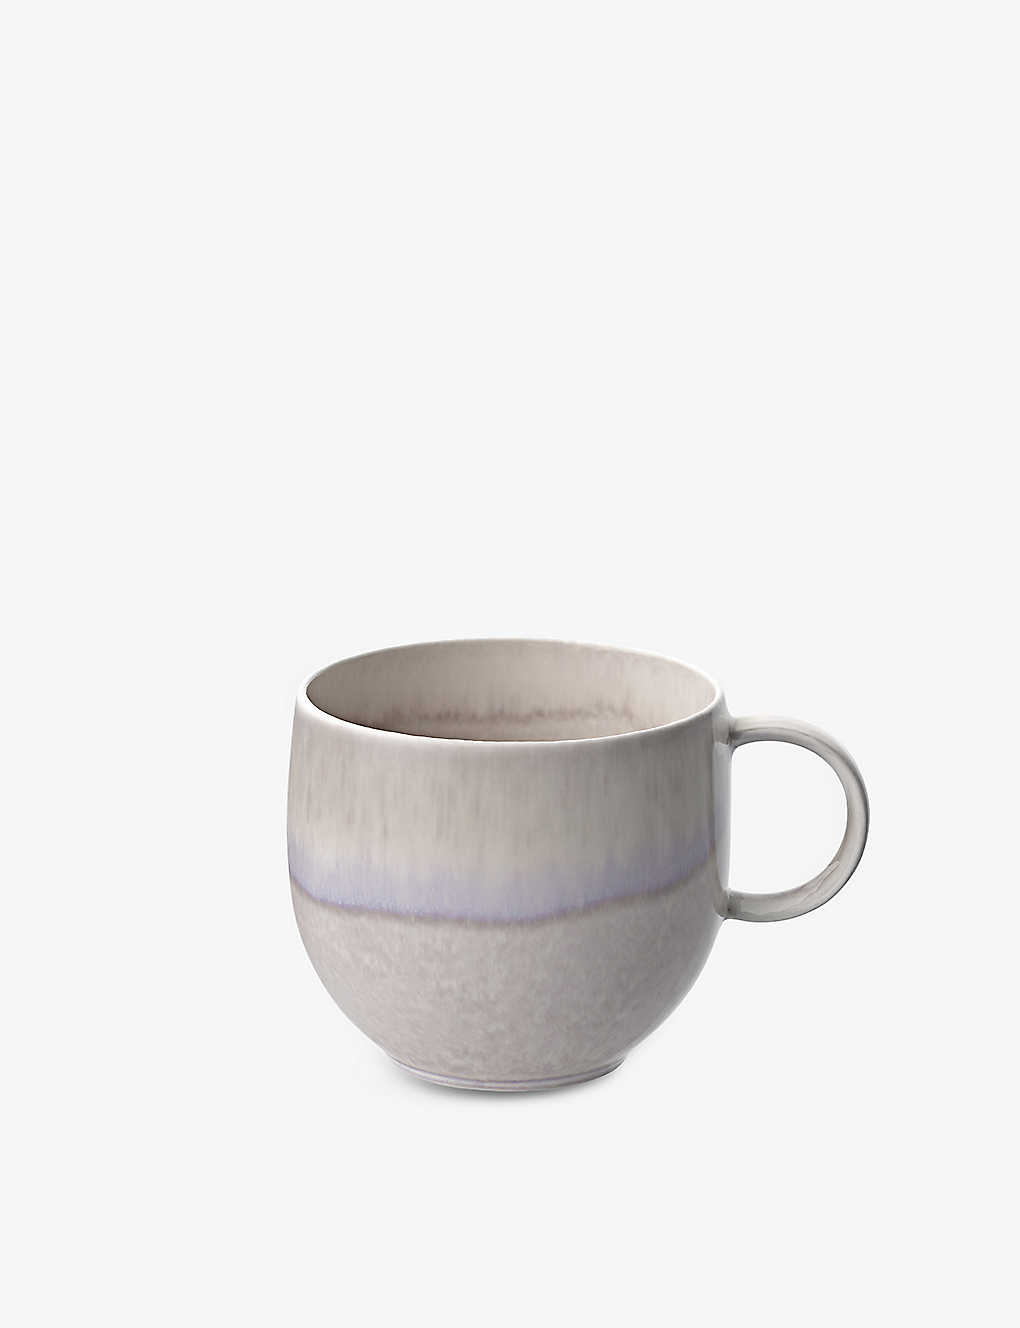 Villeroy & Boch Perlemor Glazed Porcelain Mug 290ml